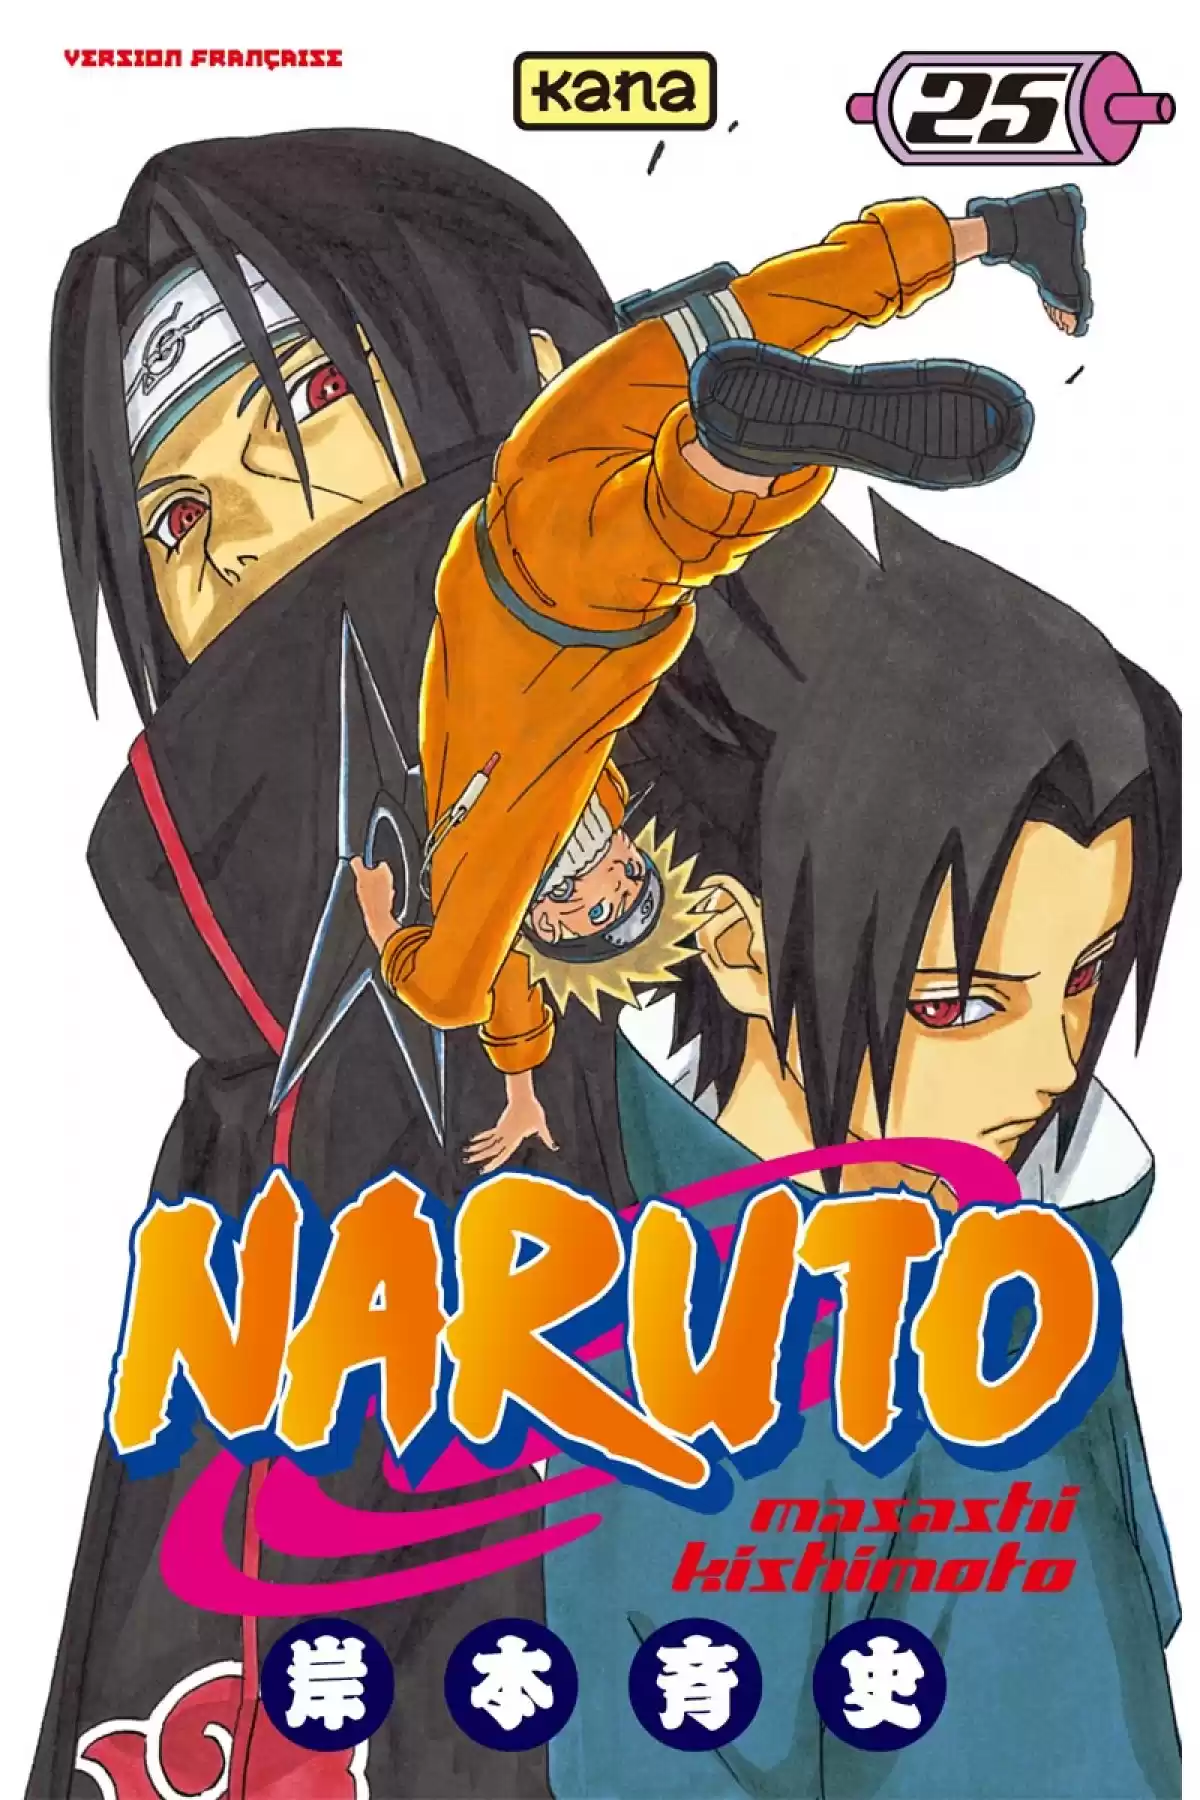 Naruto Volume 25 page 1